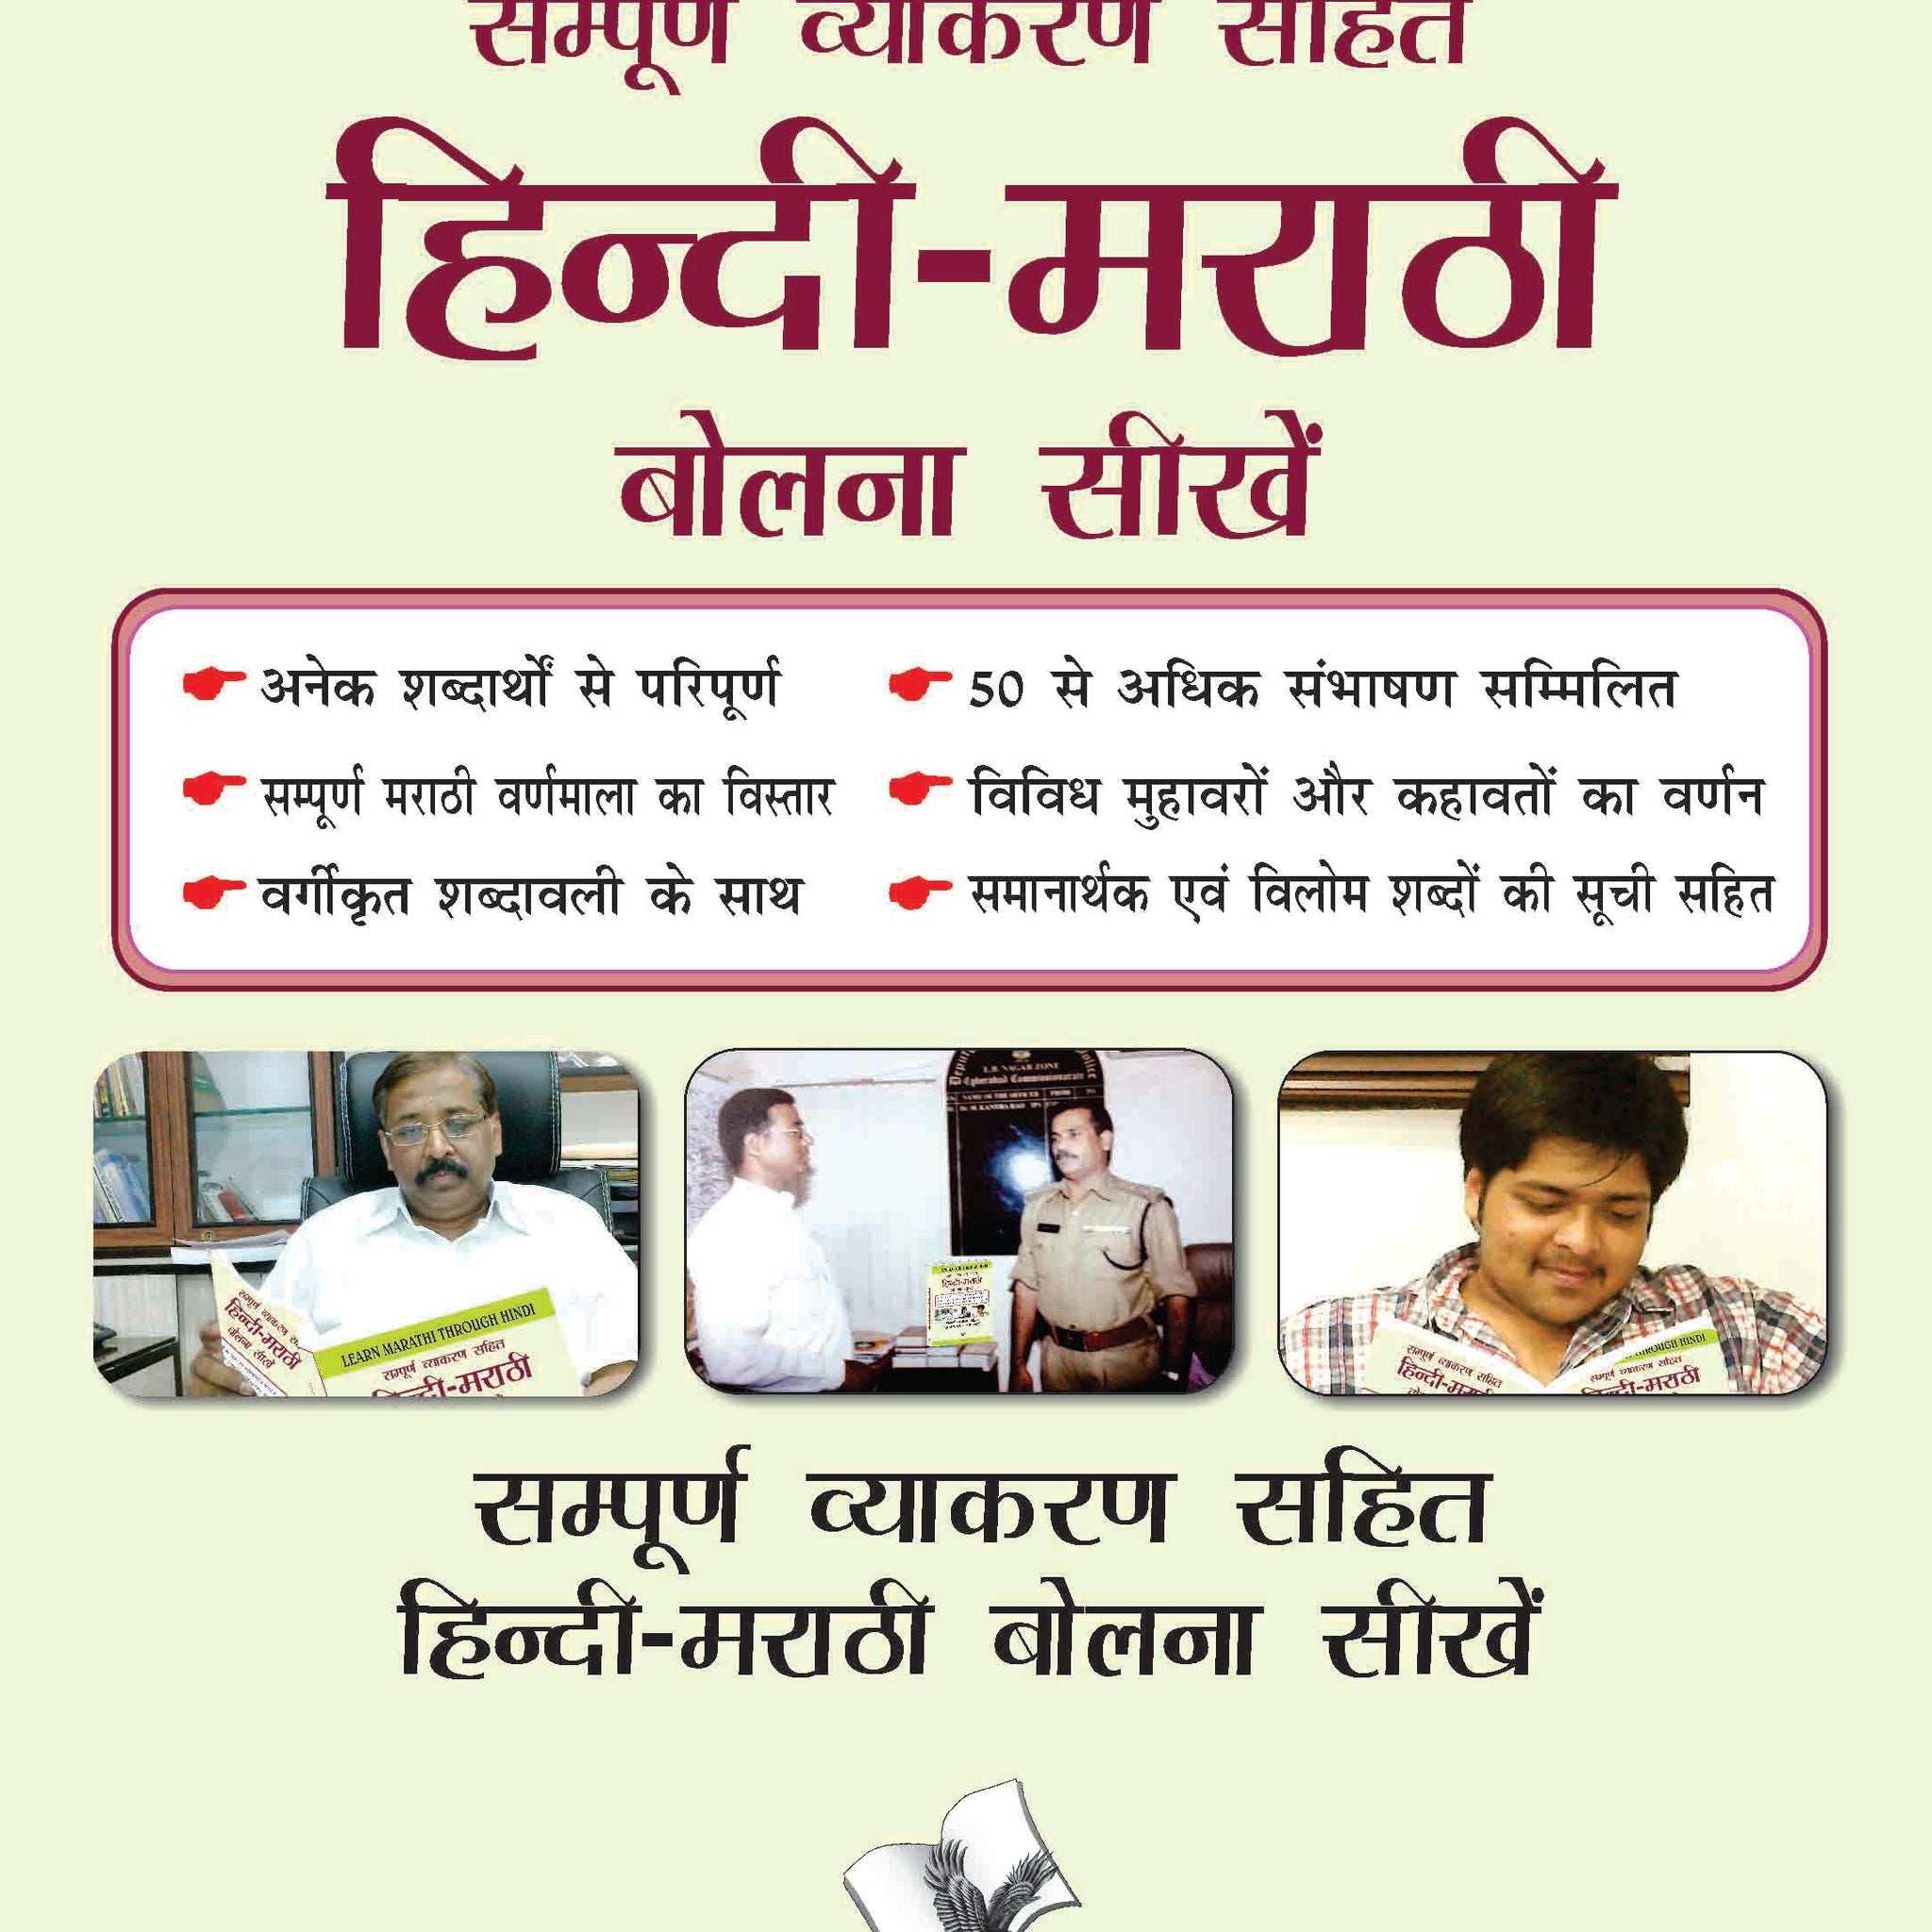 Learn Marathi Through Hindi(Hindi To Marathi Learning Course)